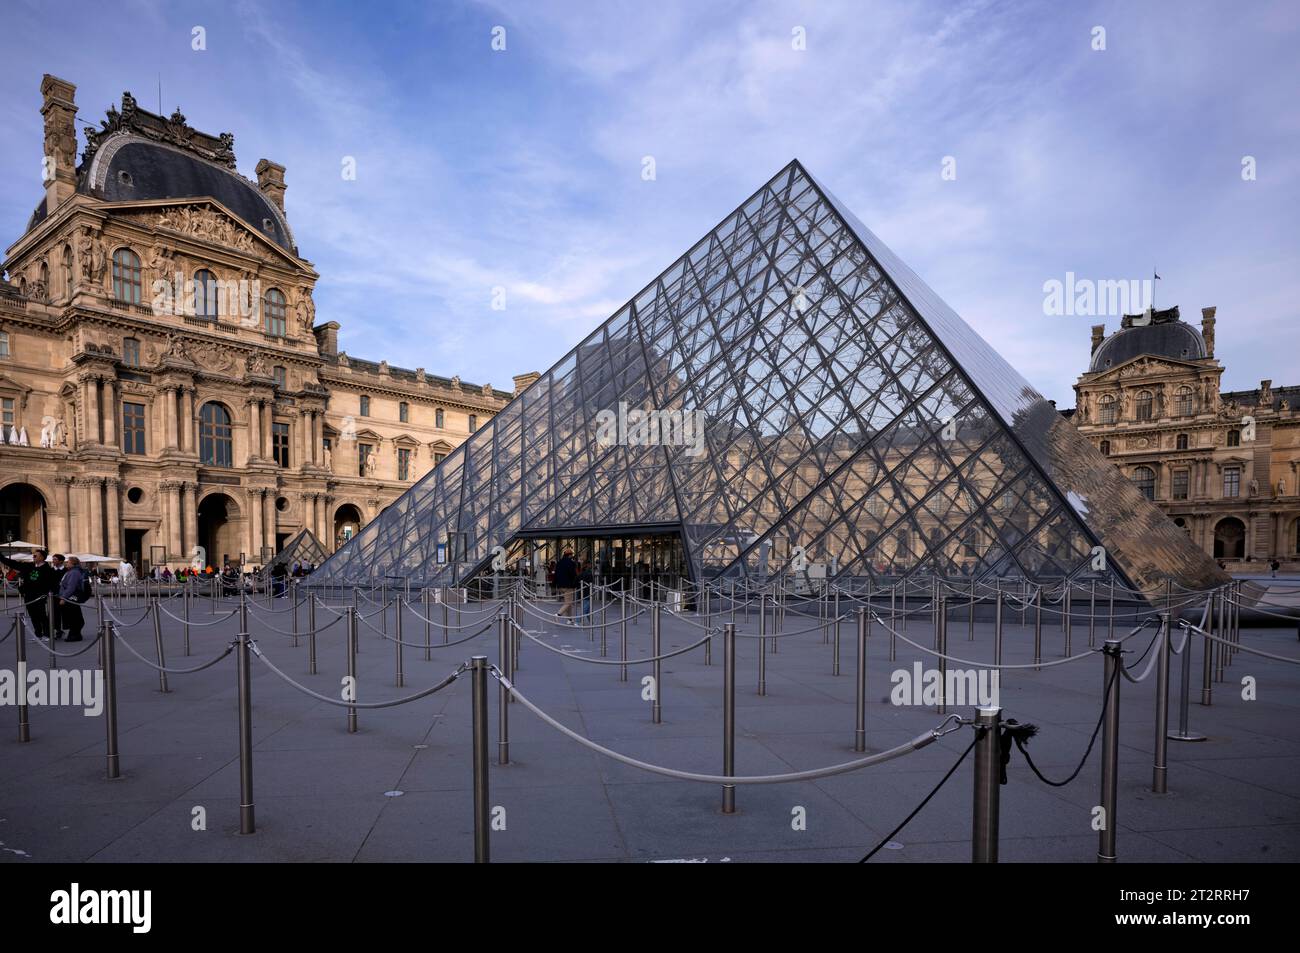 People guidance system for channelling the queue, empty, Pavillon Richelieu, glass entrance pyramid, Palais du Louvre, Paris, France Stock Photo